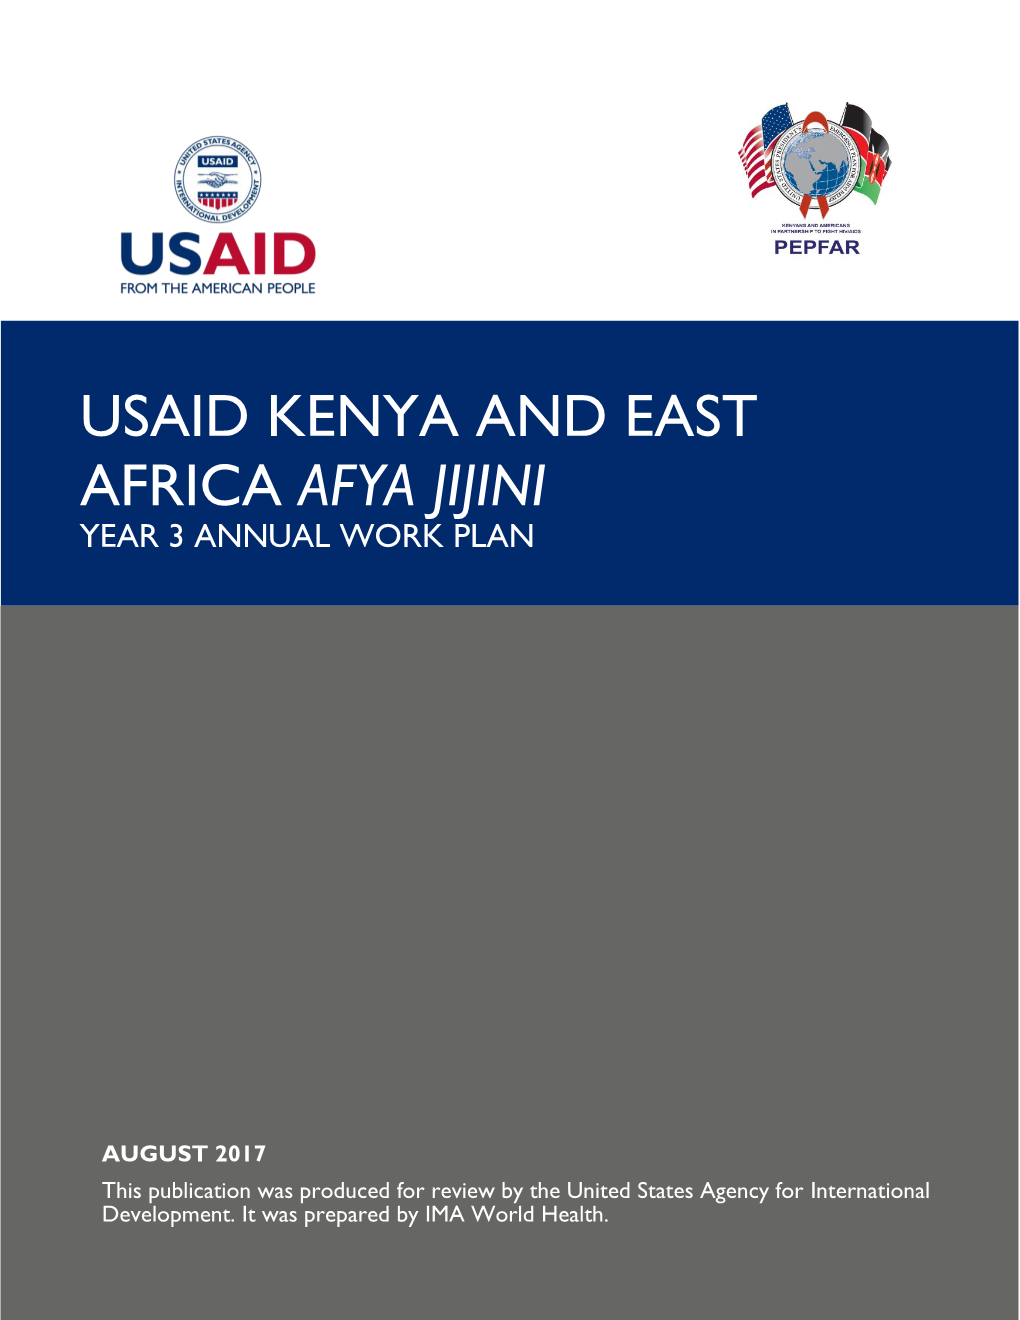 Usaid Kenya and East Africa Afya Jijini Year 3 Annual Work Plan